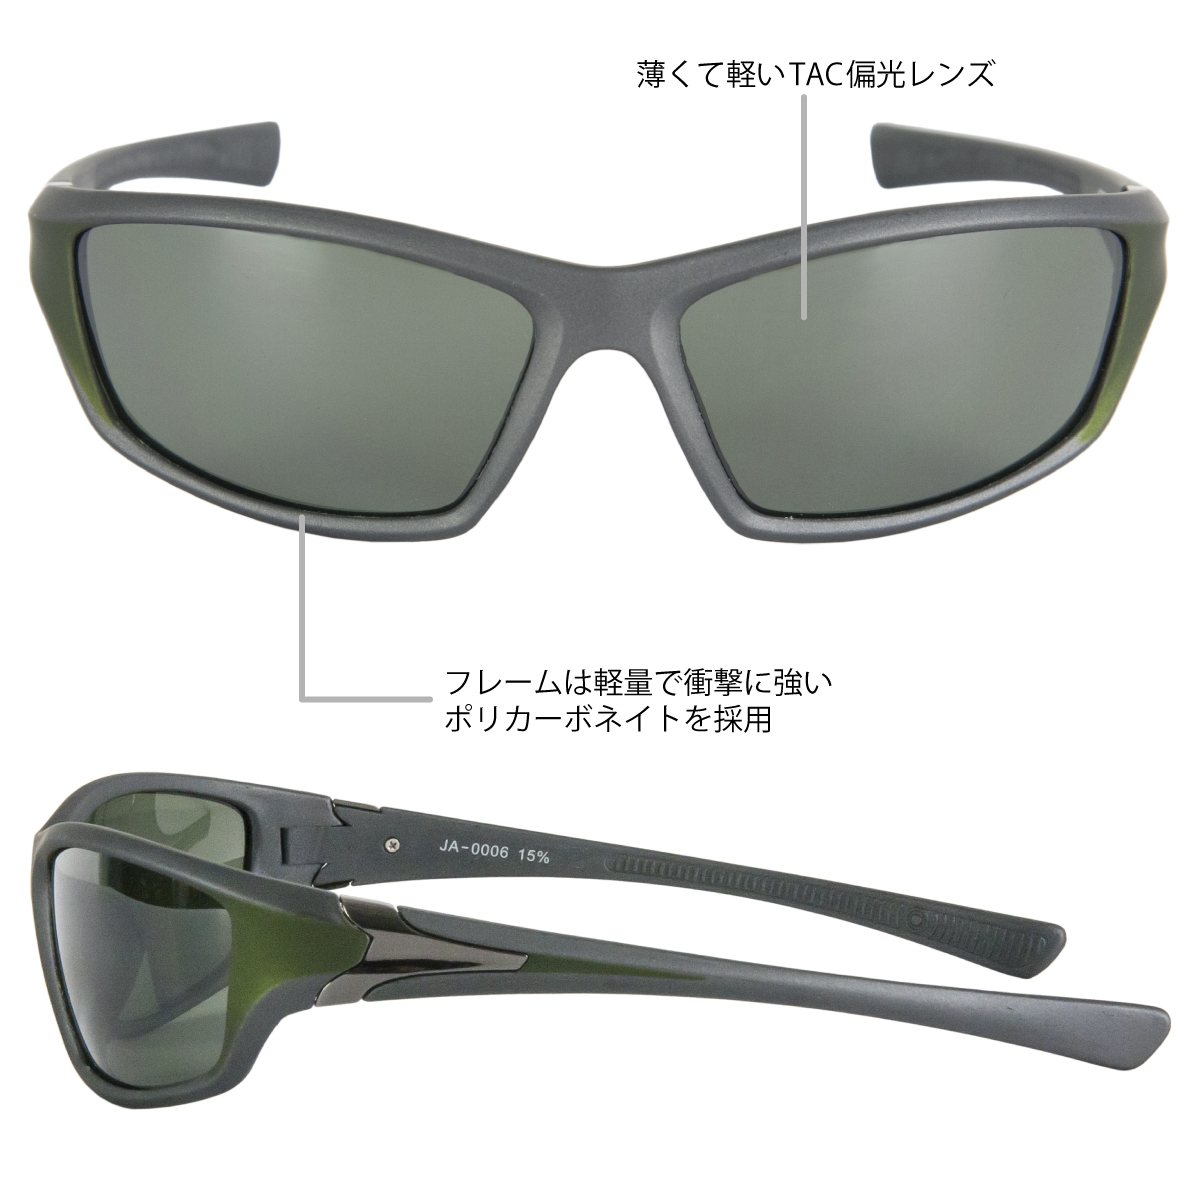 偏光グラス スポーツ型 グリーン/ライトシルバーミラーレンズ H.B concept